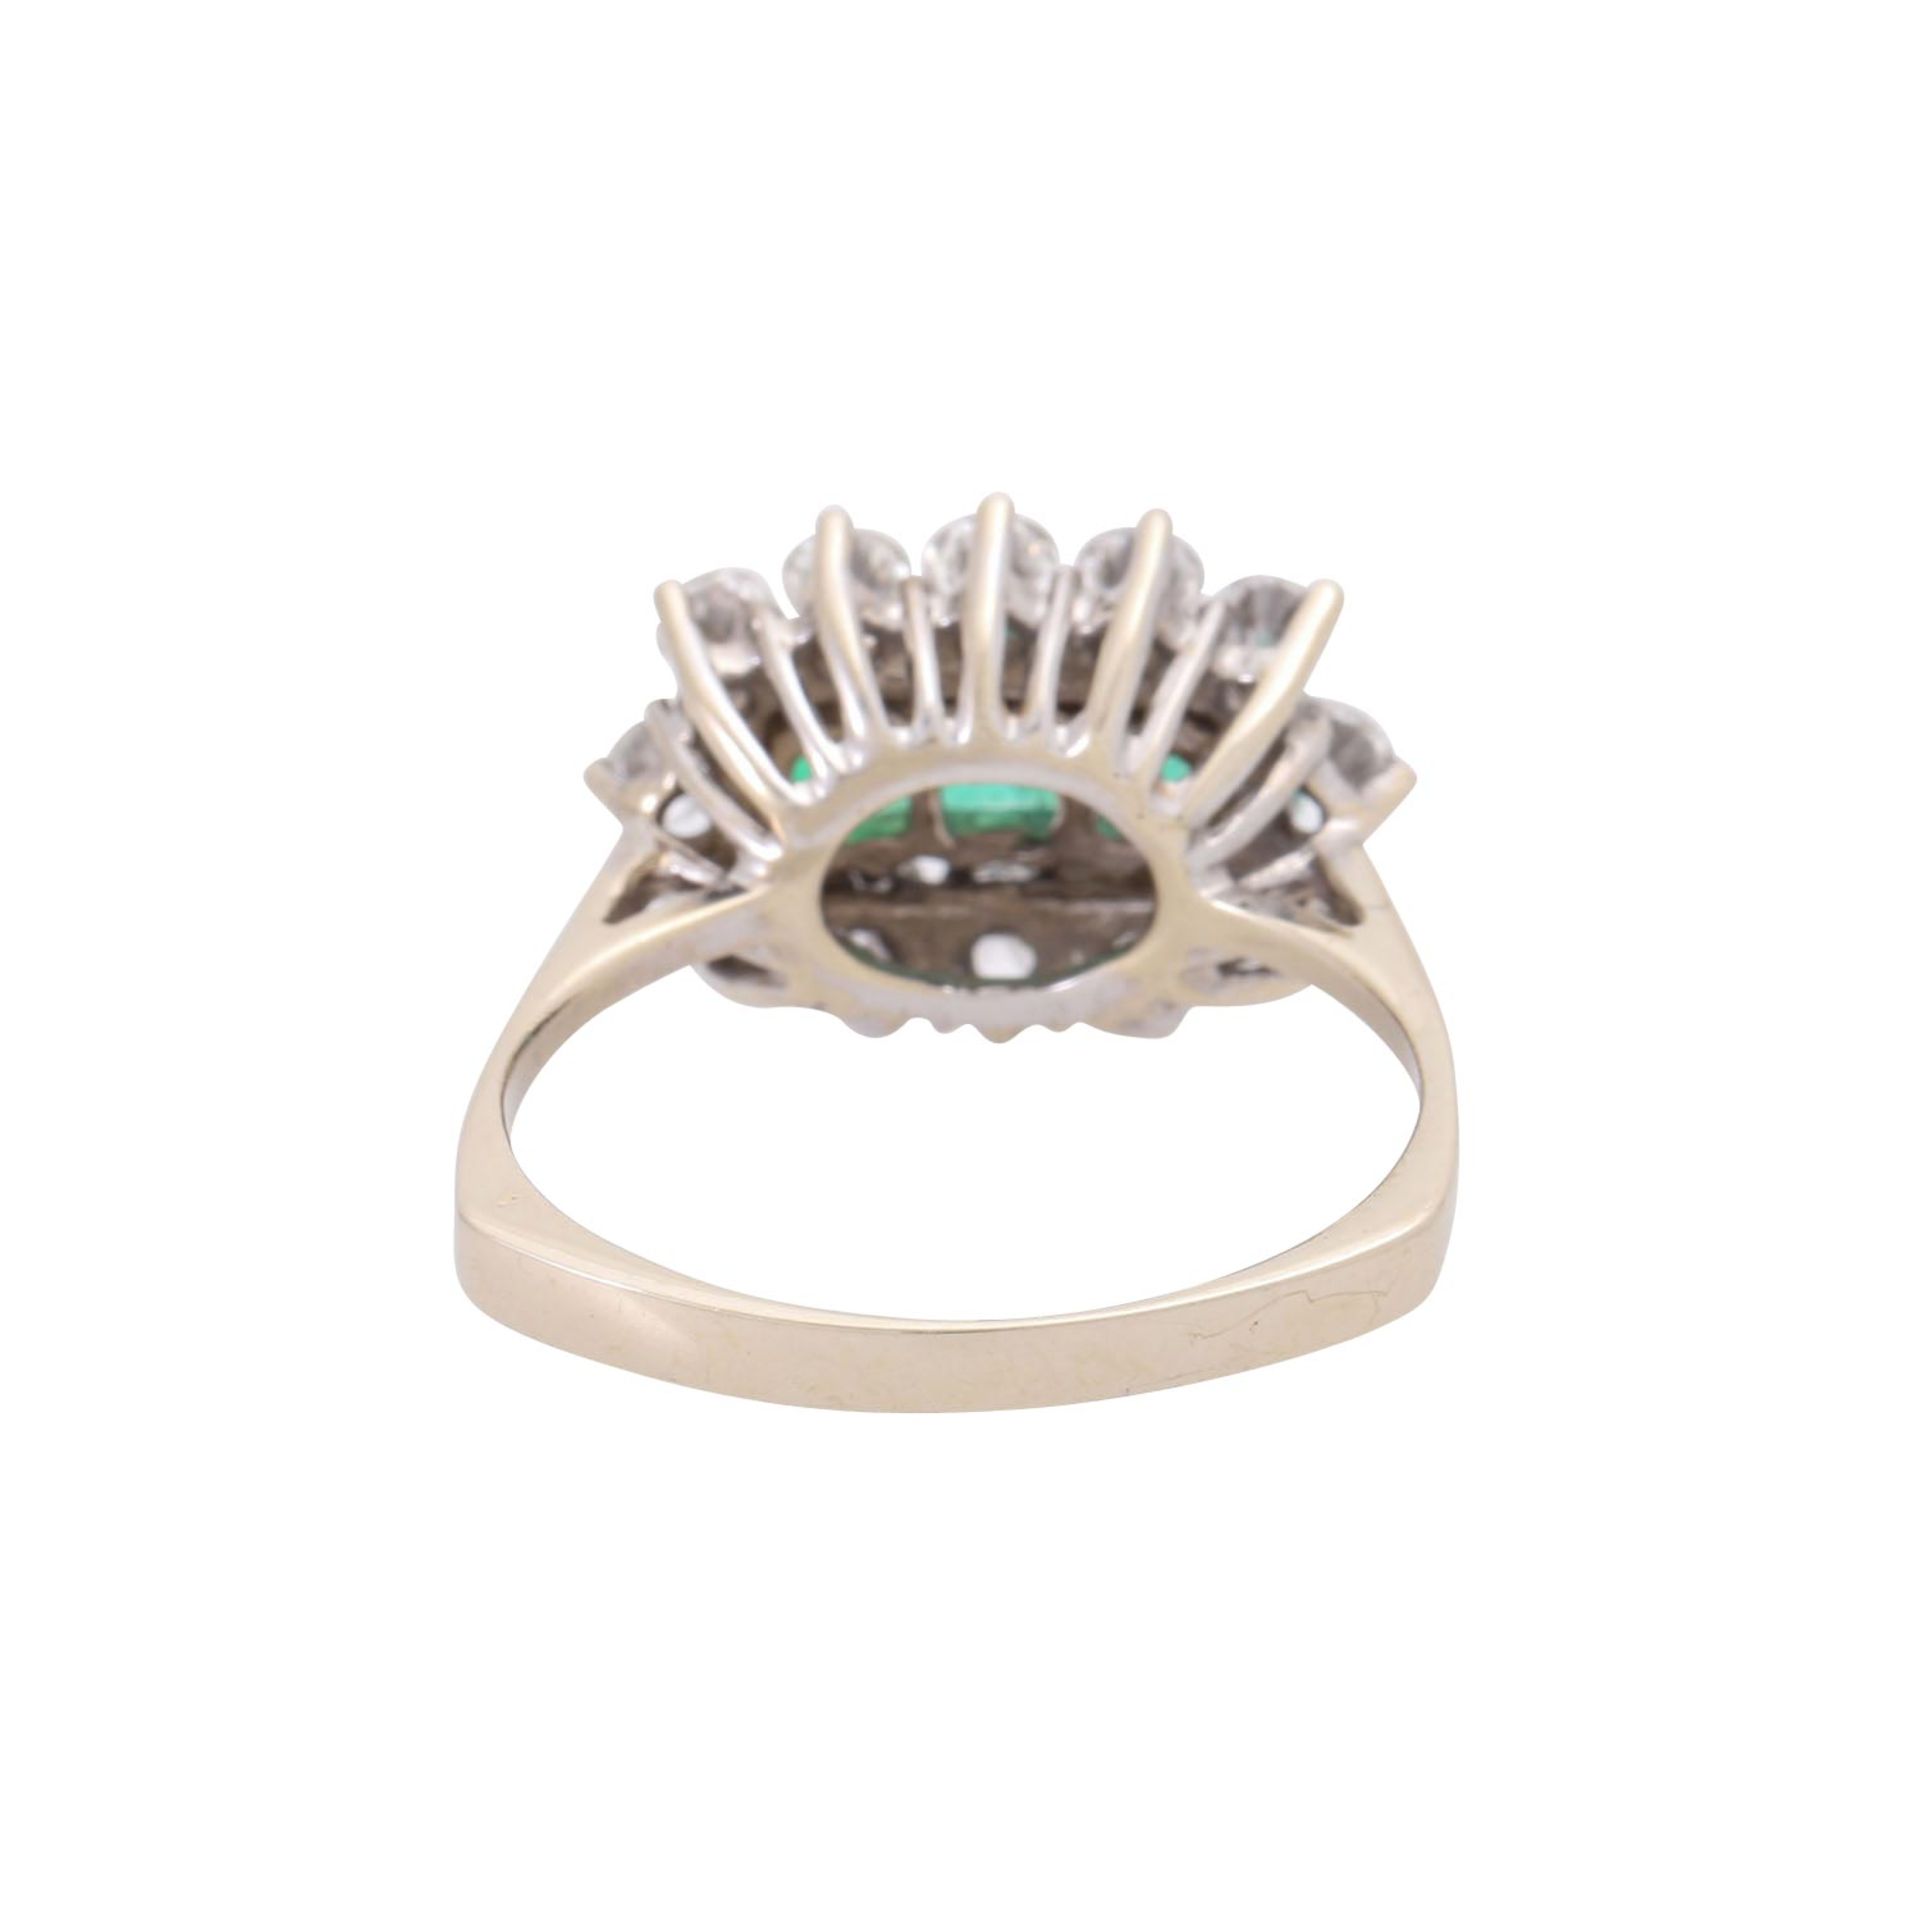 Ring mit 3 Smaragdcarrées umgeben von 12 Diamanten, zus. ca. 1 ct, - Bild 3 aus 4